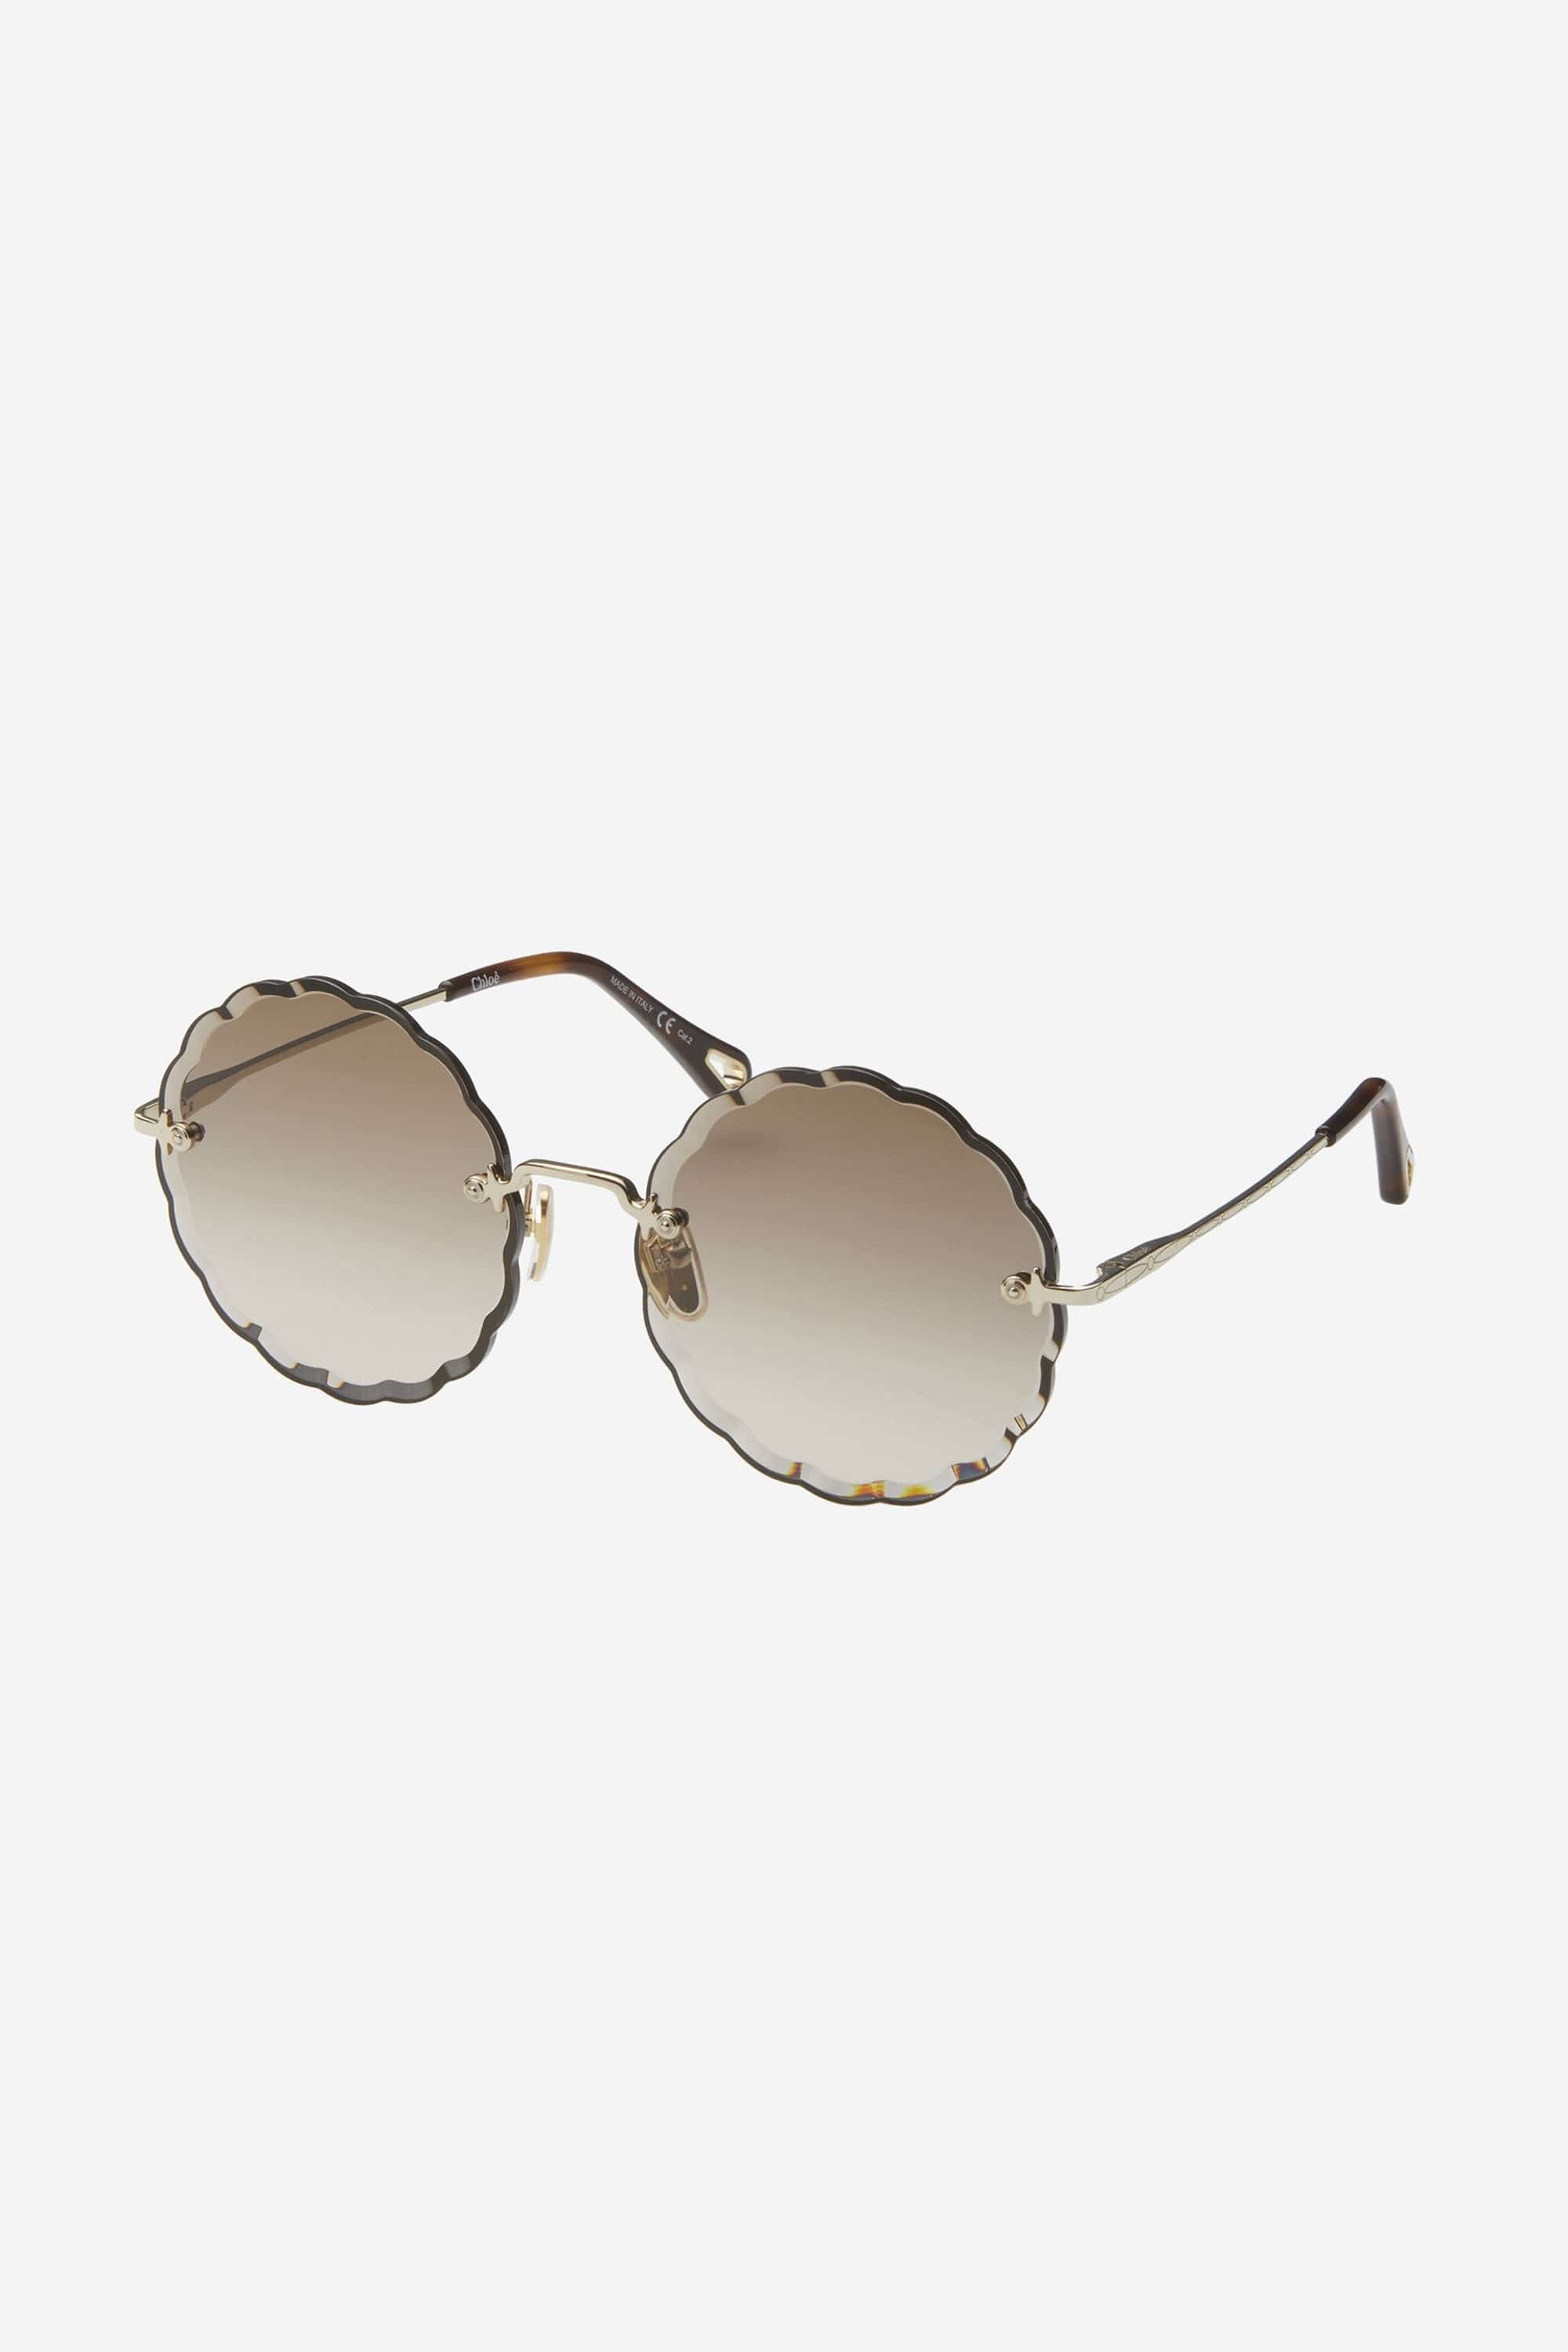 Chloe rosie brown femenine sunglasses - Eyewear Club